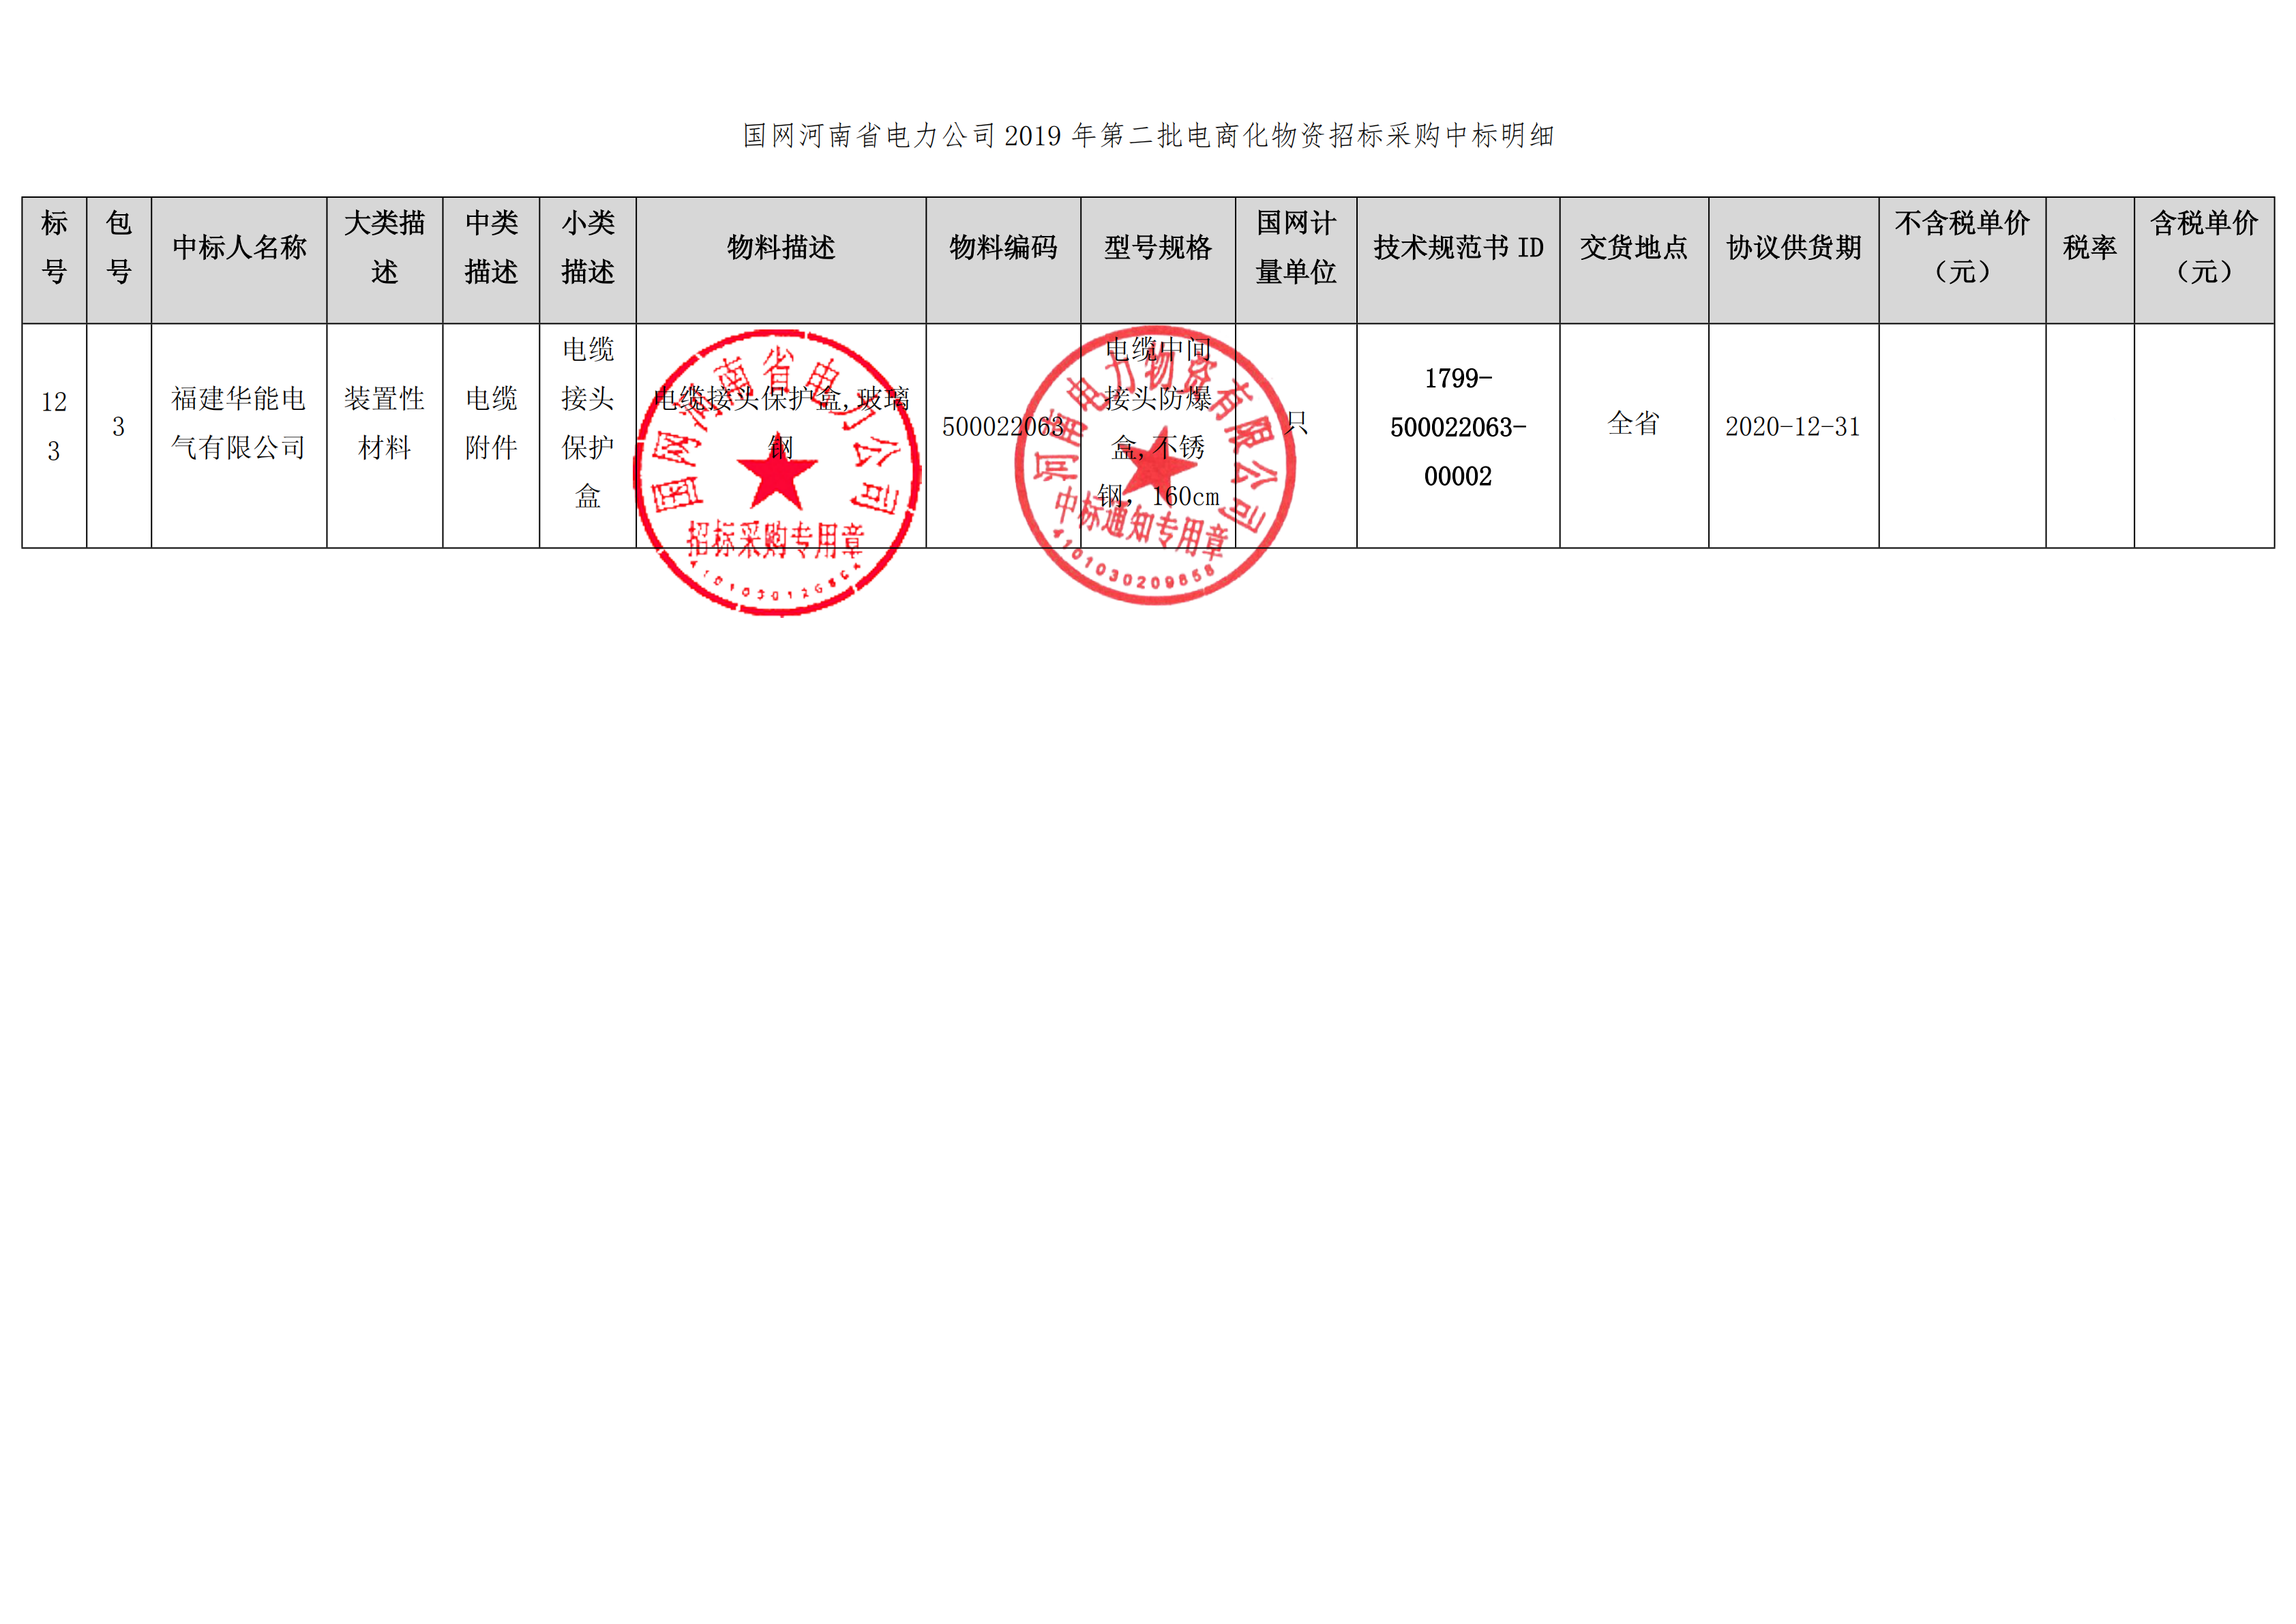 8、国网河南省电力公司2019 年第二批电商化公开竞争性谈判采购_01 拷贝.png